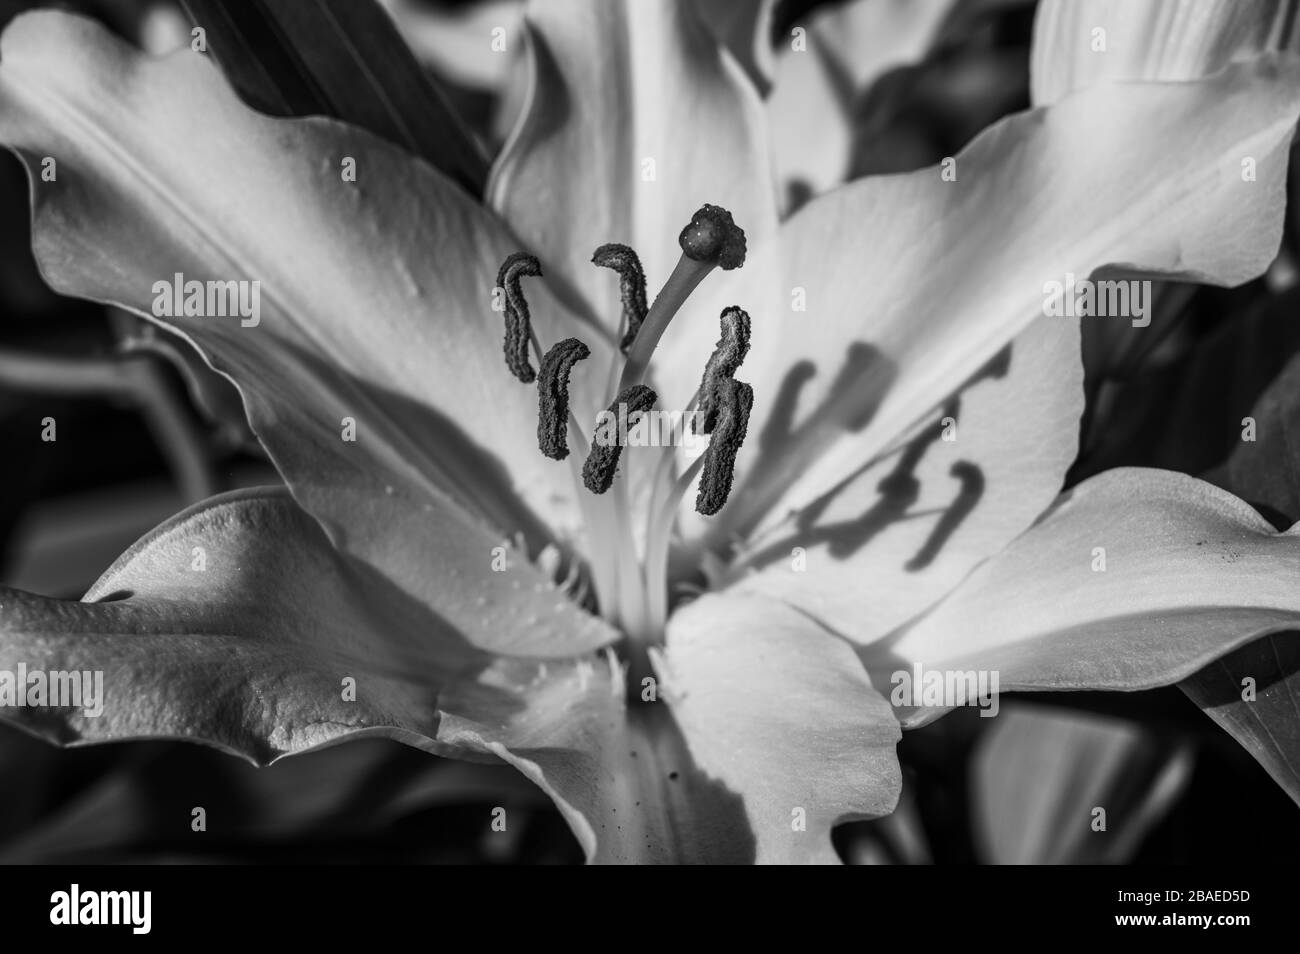 Schwarz-weiße Nahaufnahme des Stigmas, Stils, Staubfäden, Blumenstillles einer weißen Lilienblume in direkter Sonneneinstrahlung, die Schatten erzeugt. Stockfoto